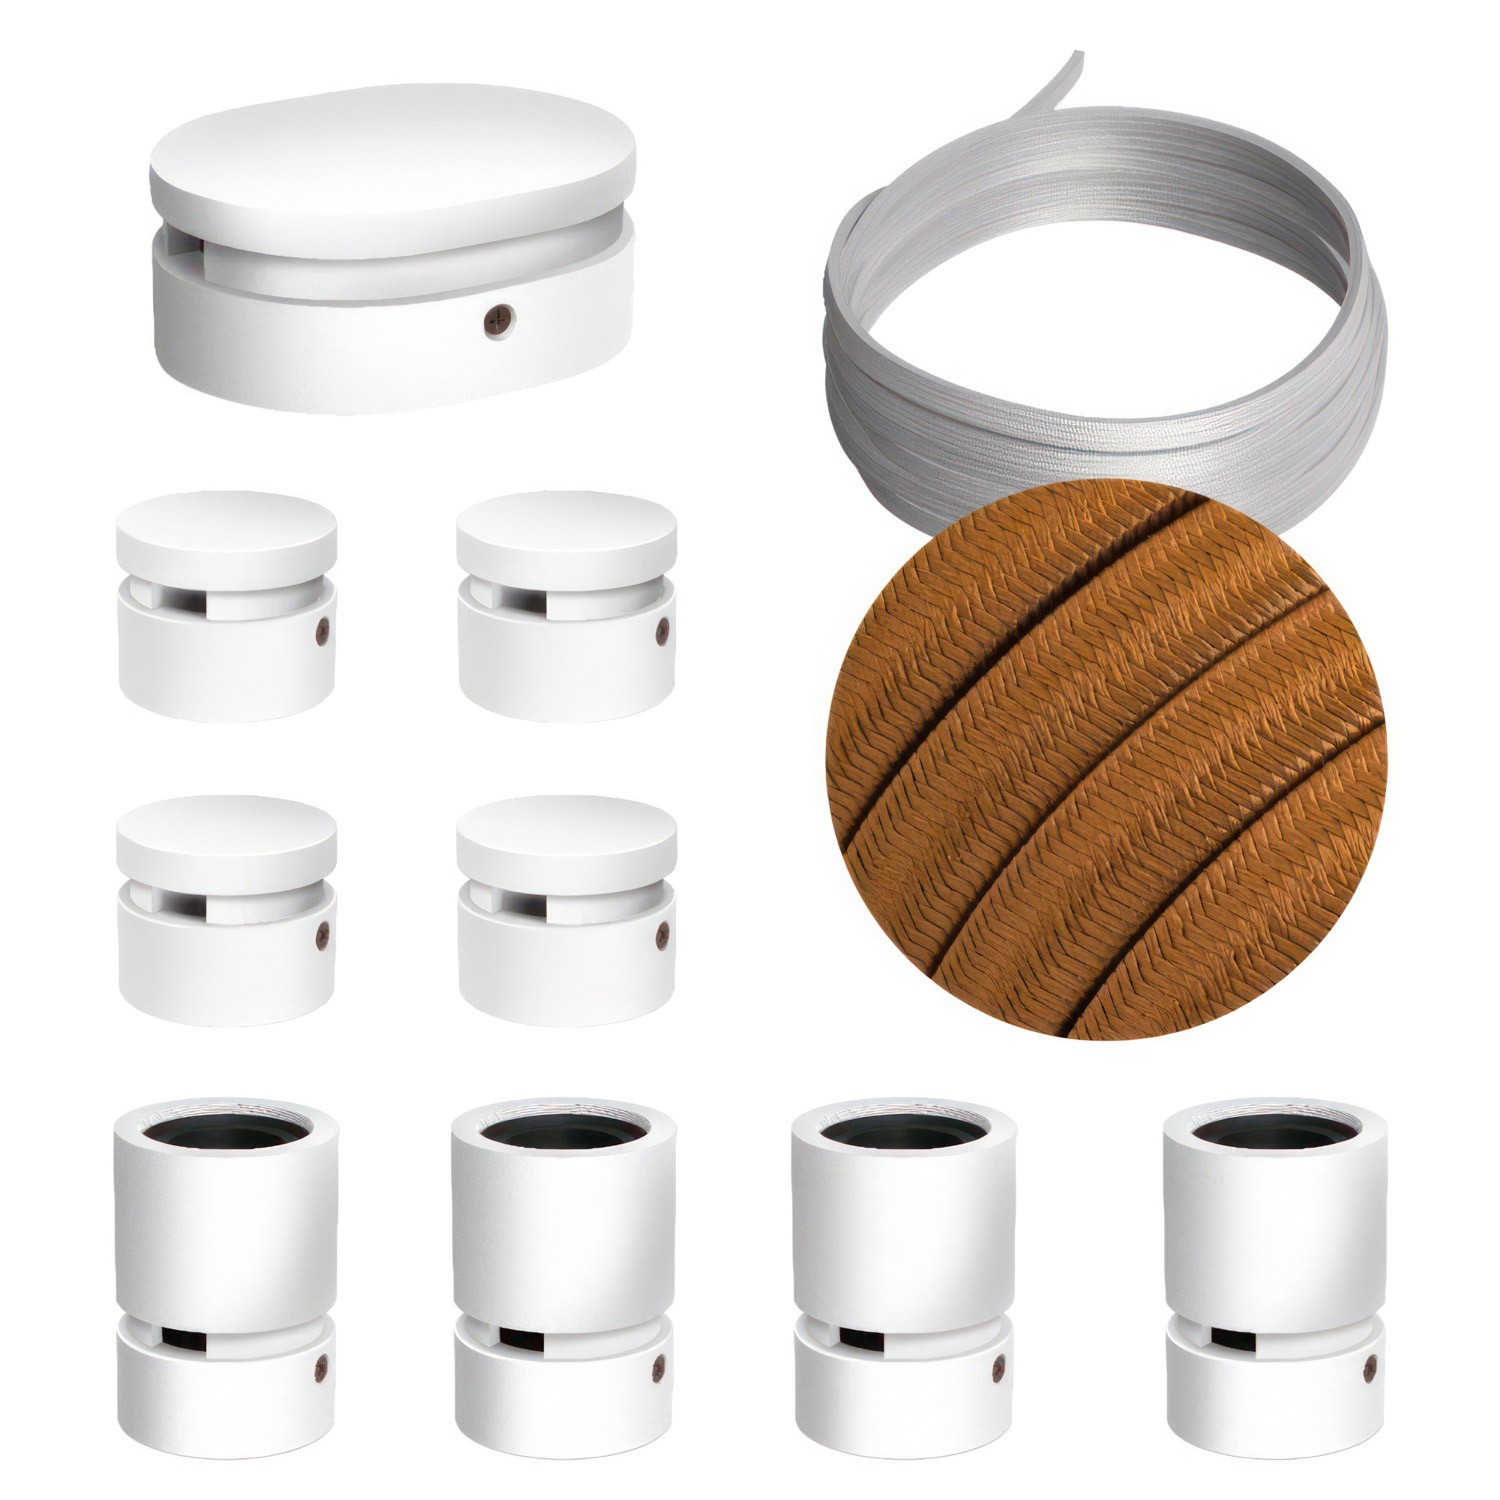 Filé Symmetric kit systeem - met 5 m. prikkabel voor lichtsnoer en 9 componenten van wit gelakt hout voor binnenruimtes.